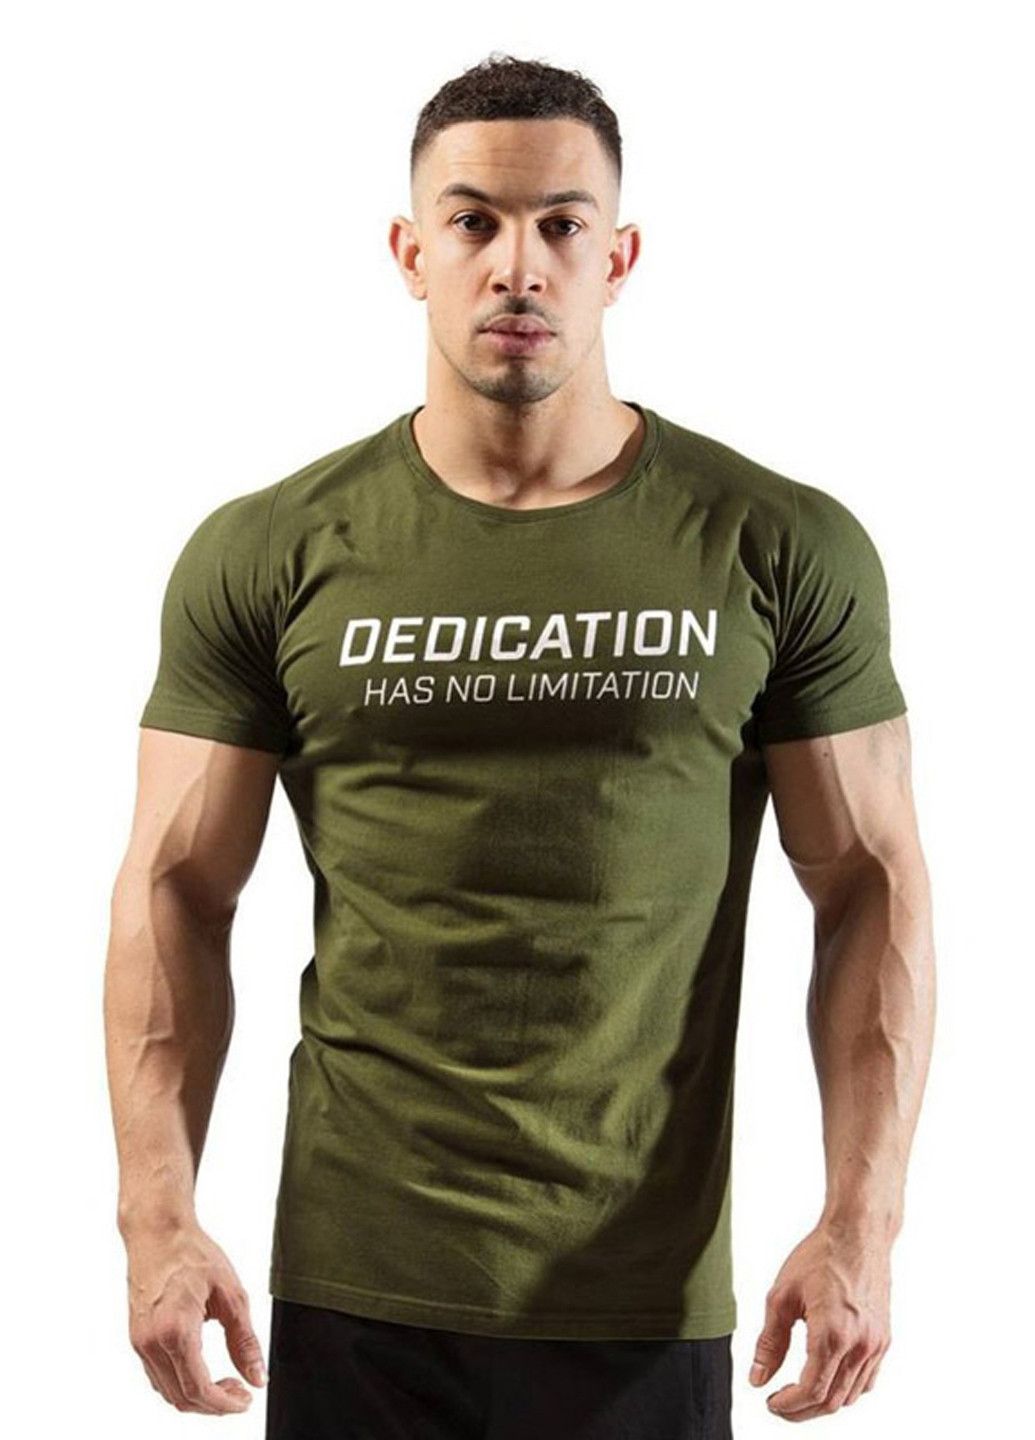 Хаки (оливковая) мужская зеленая футболка с коротким рукавом Alpha